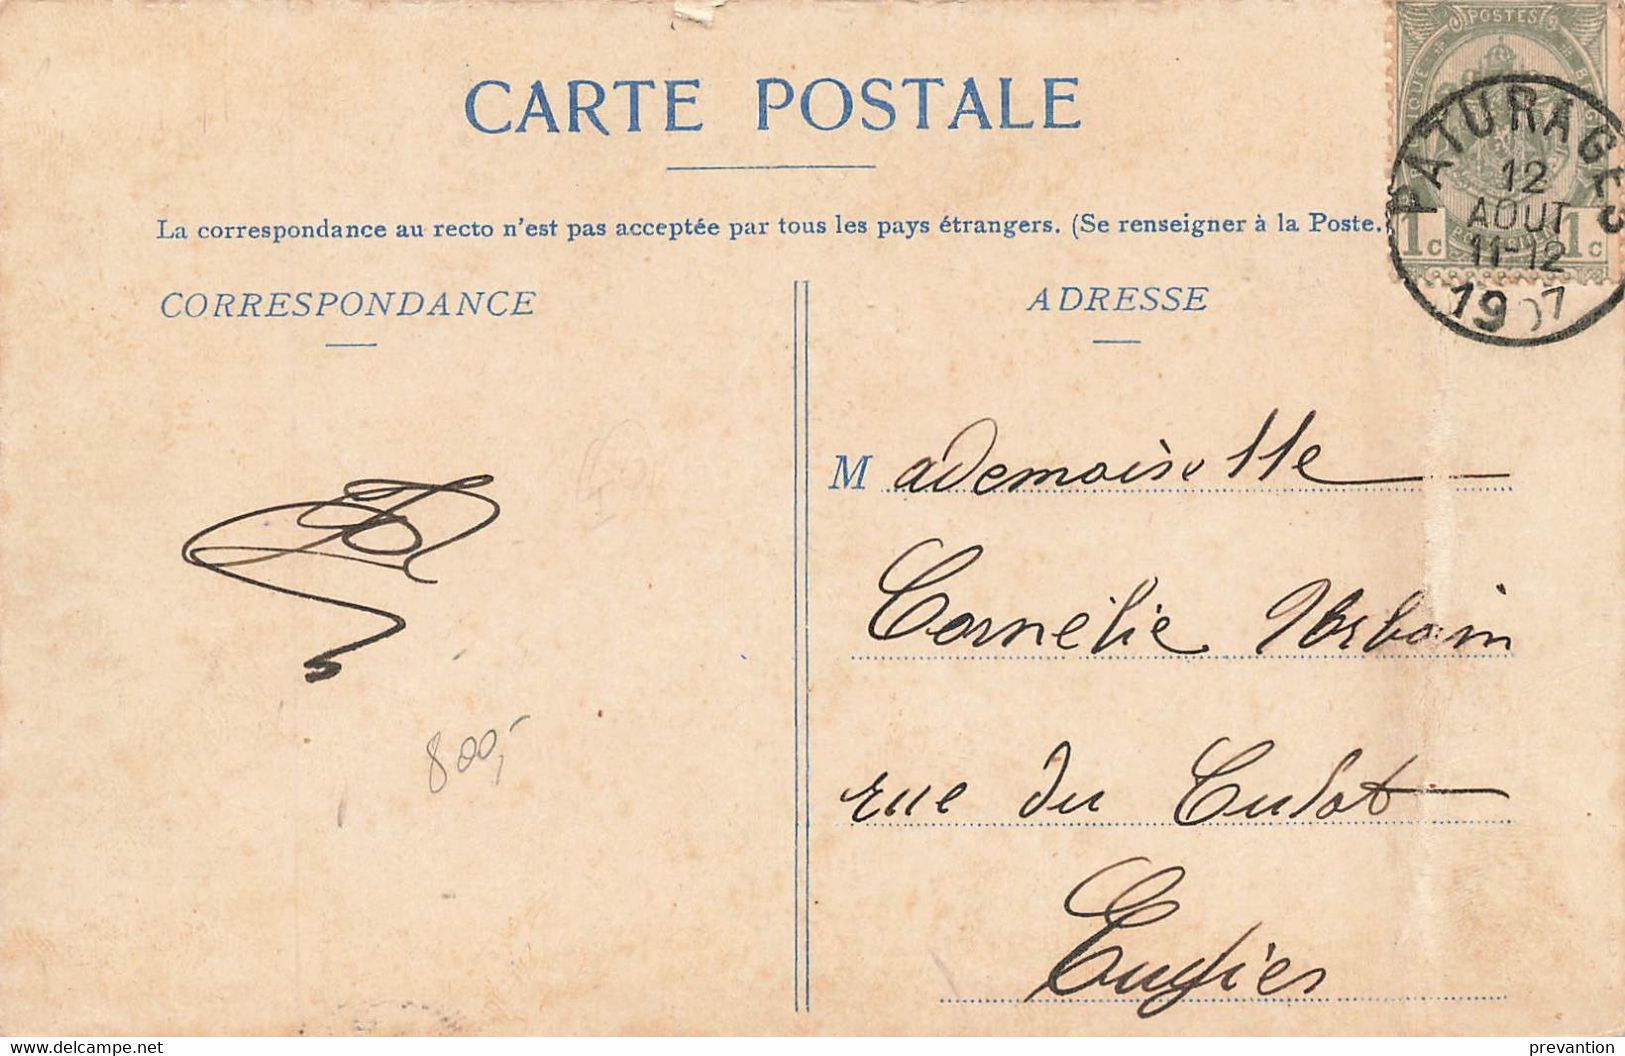 PATURAGES - Charbonnage Du Fief De Lambrechies - Carte Bleutée Et Circulé En 1907 - Colfontaine